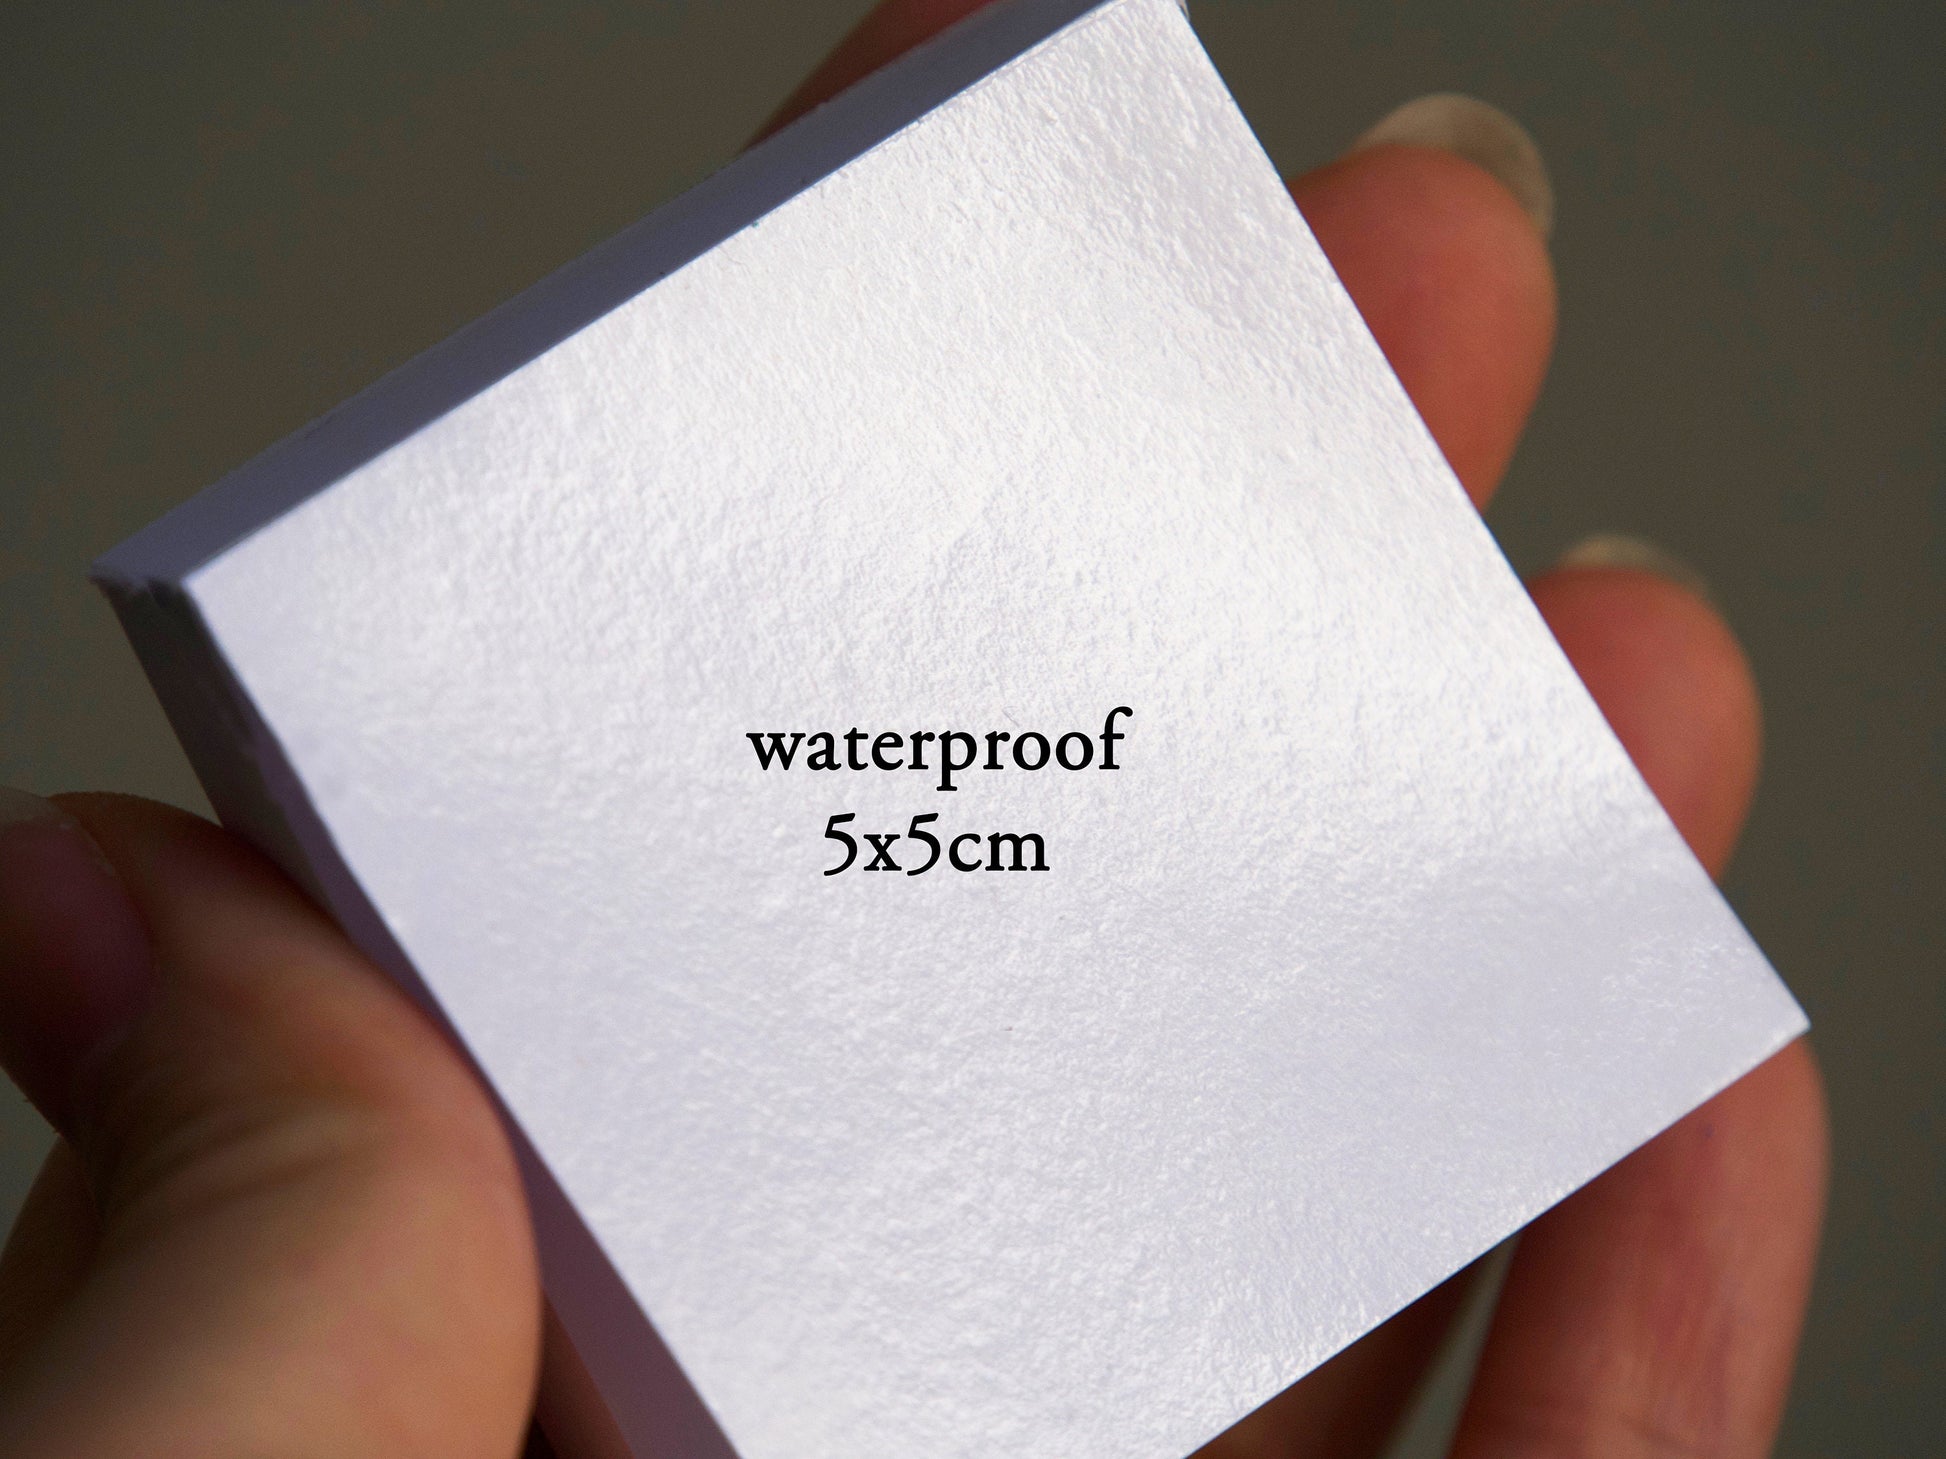 Disposable Palette Paper